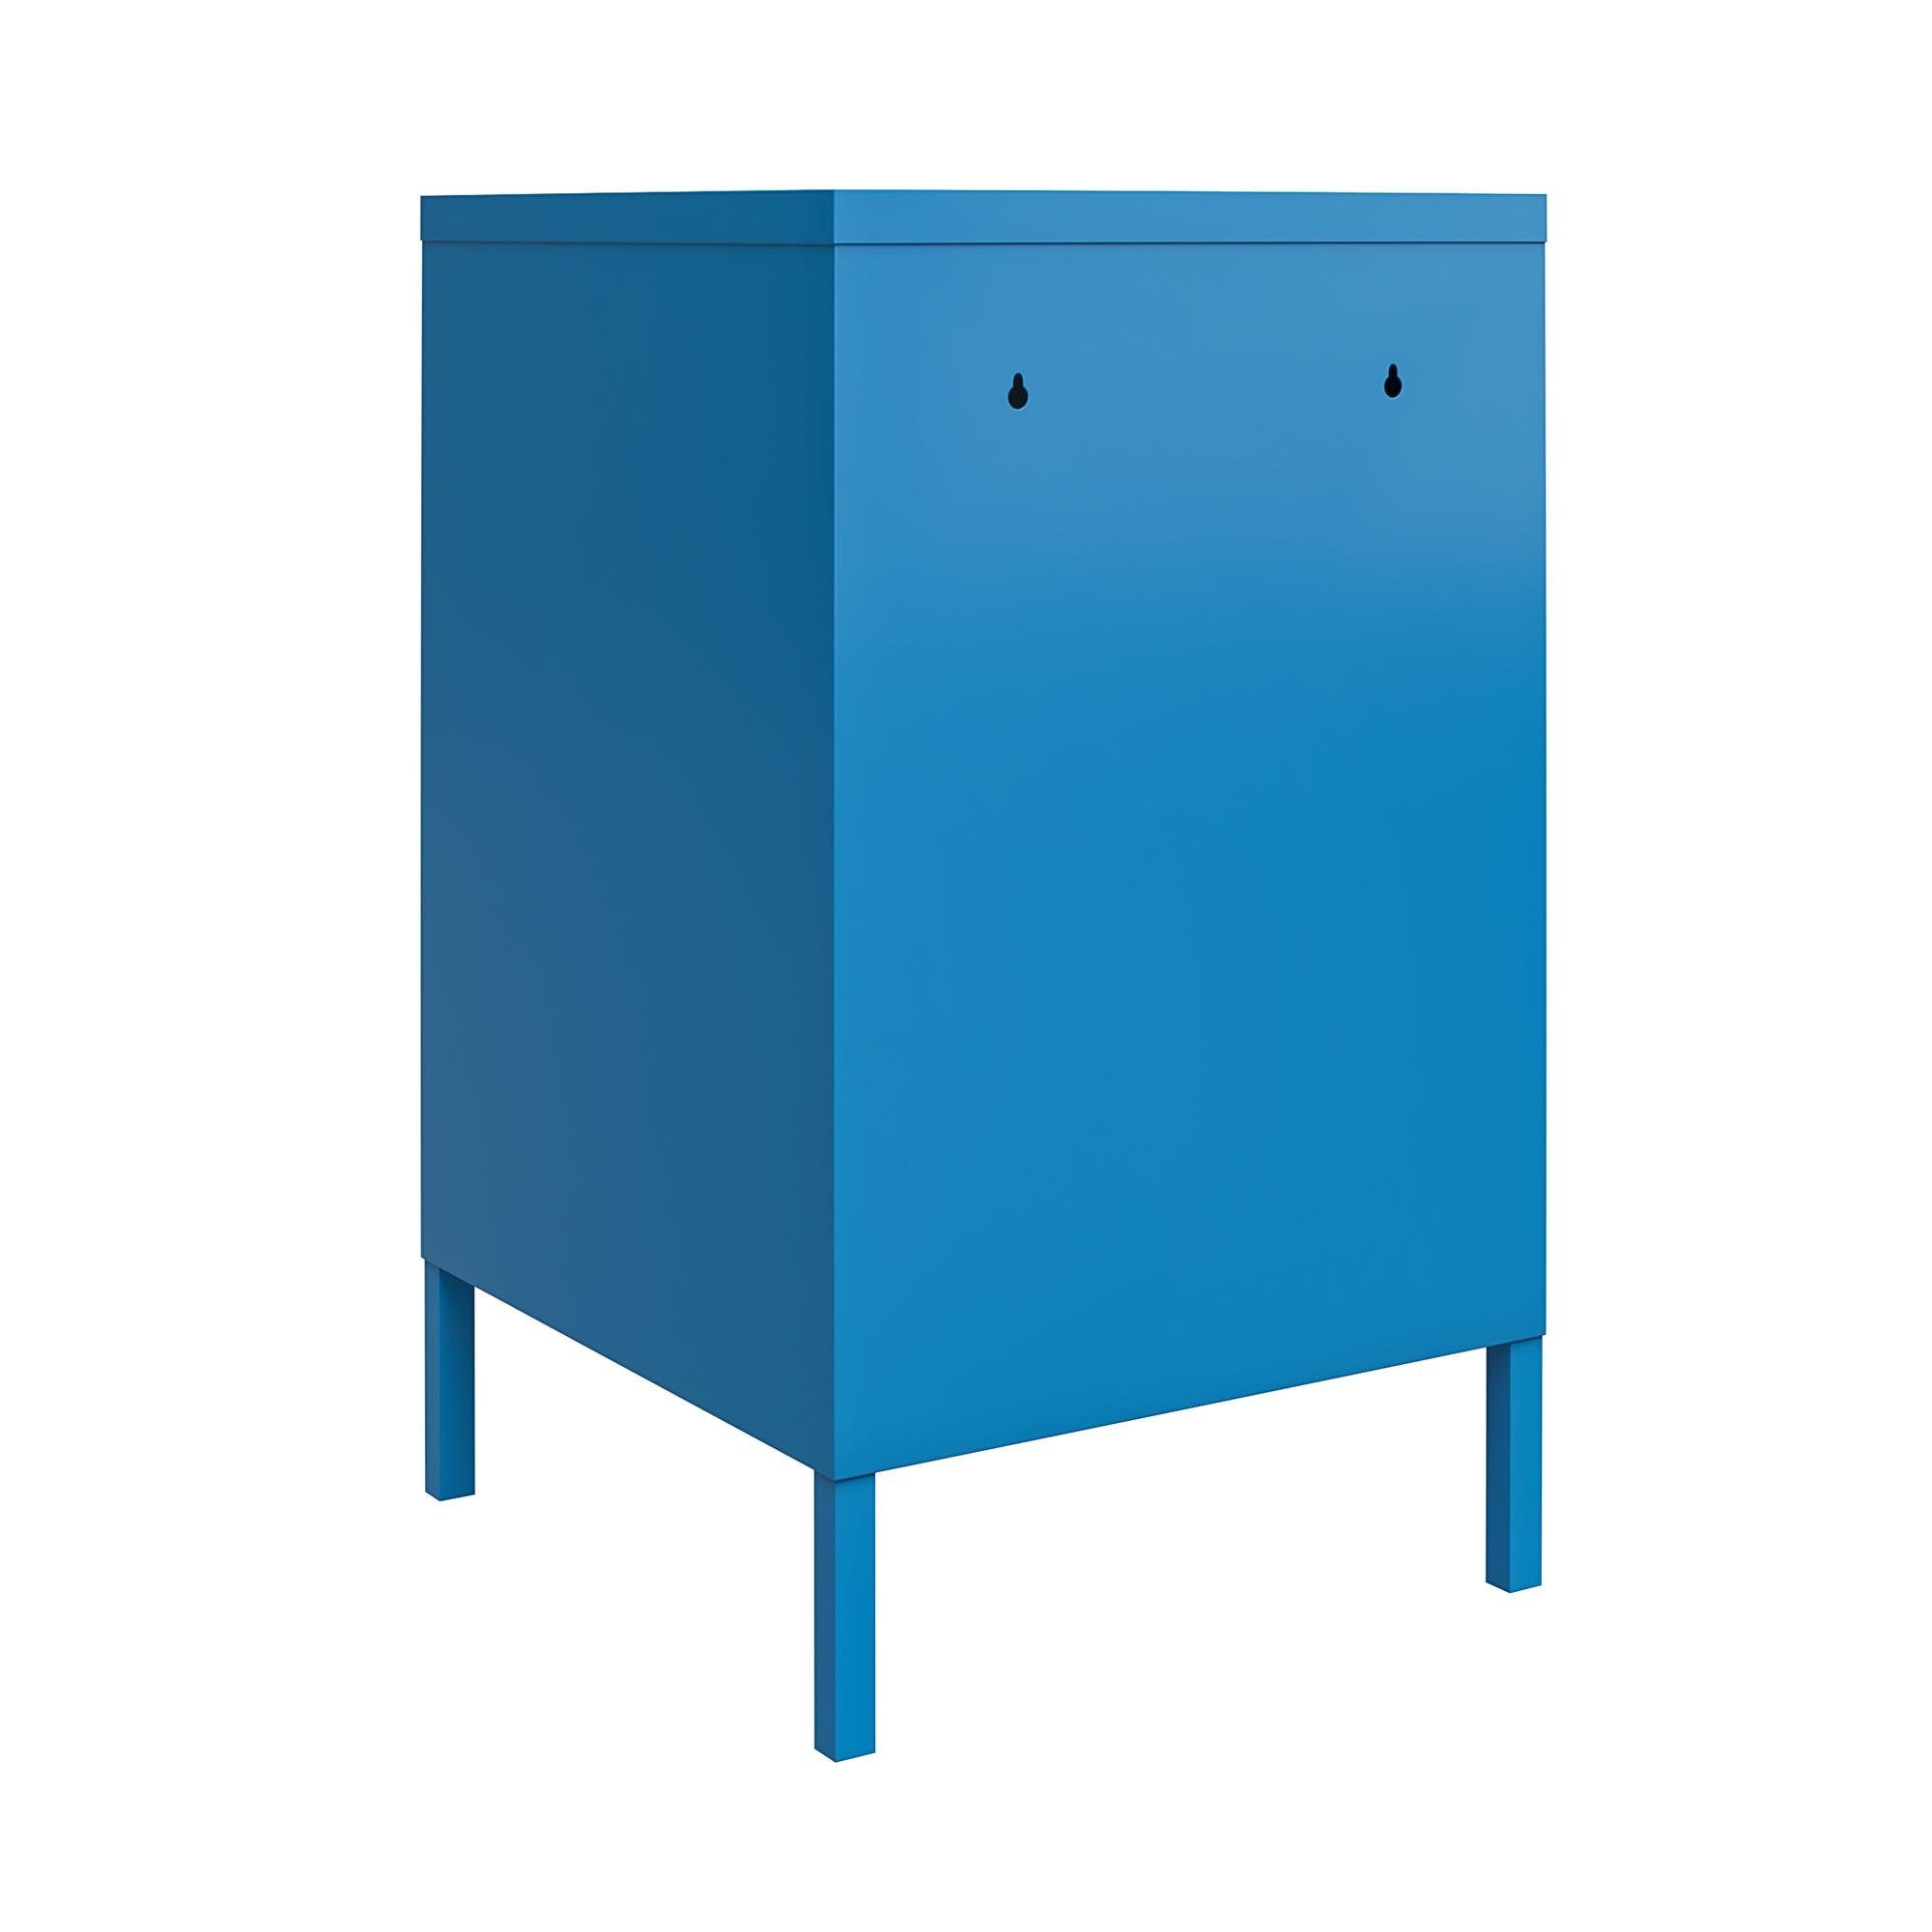 loft24 Nachtschrank Cache aus Metall Retro-Design Spint-Look, im blau abschließbar